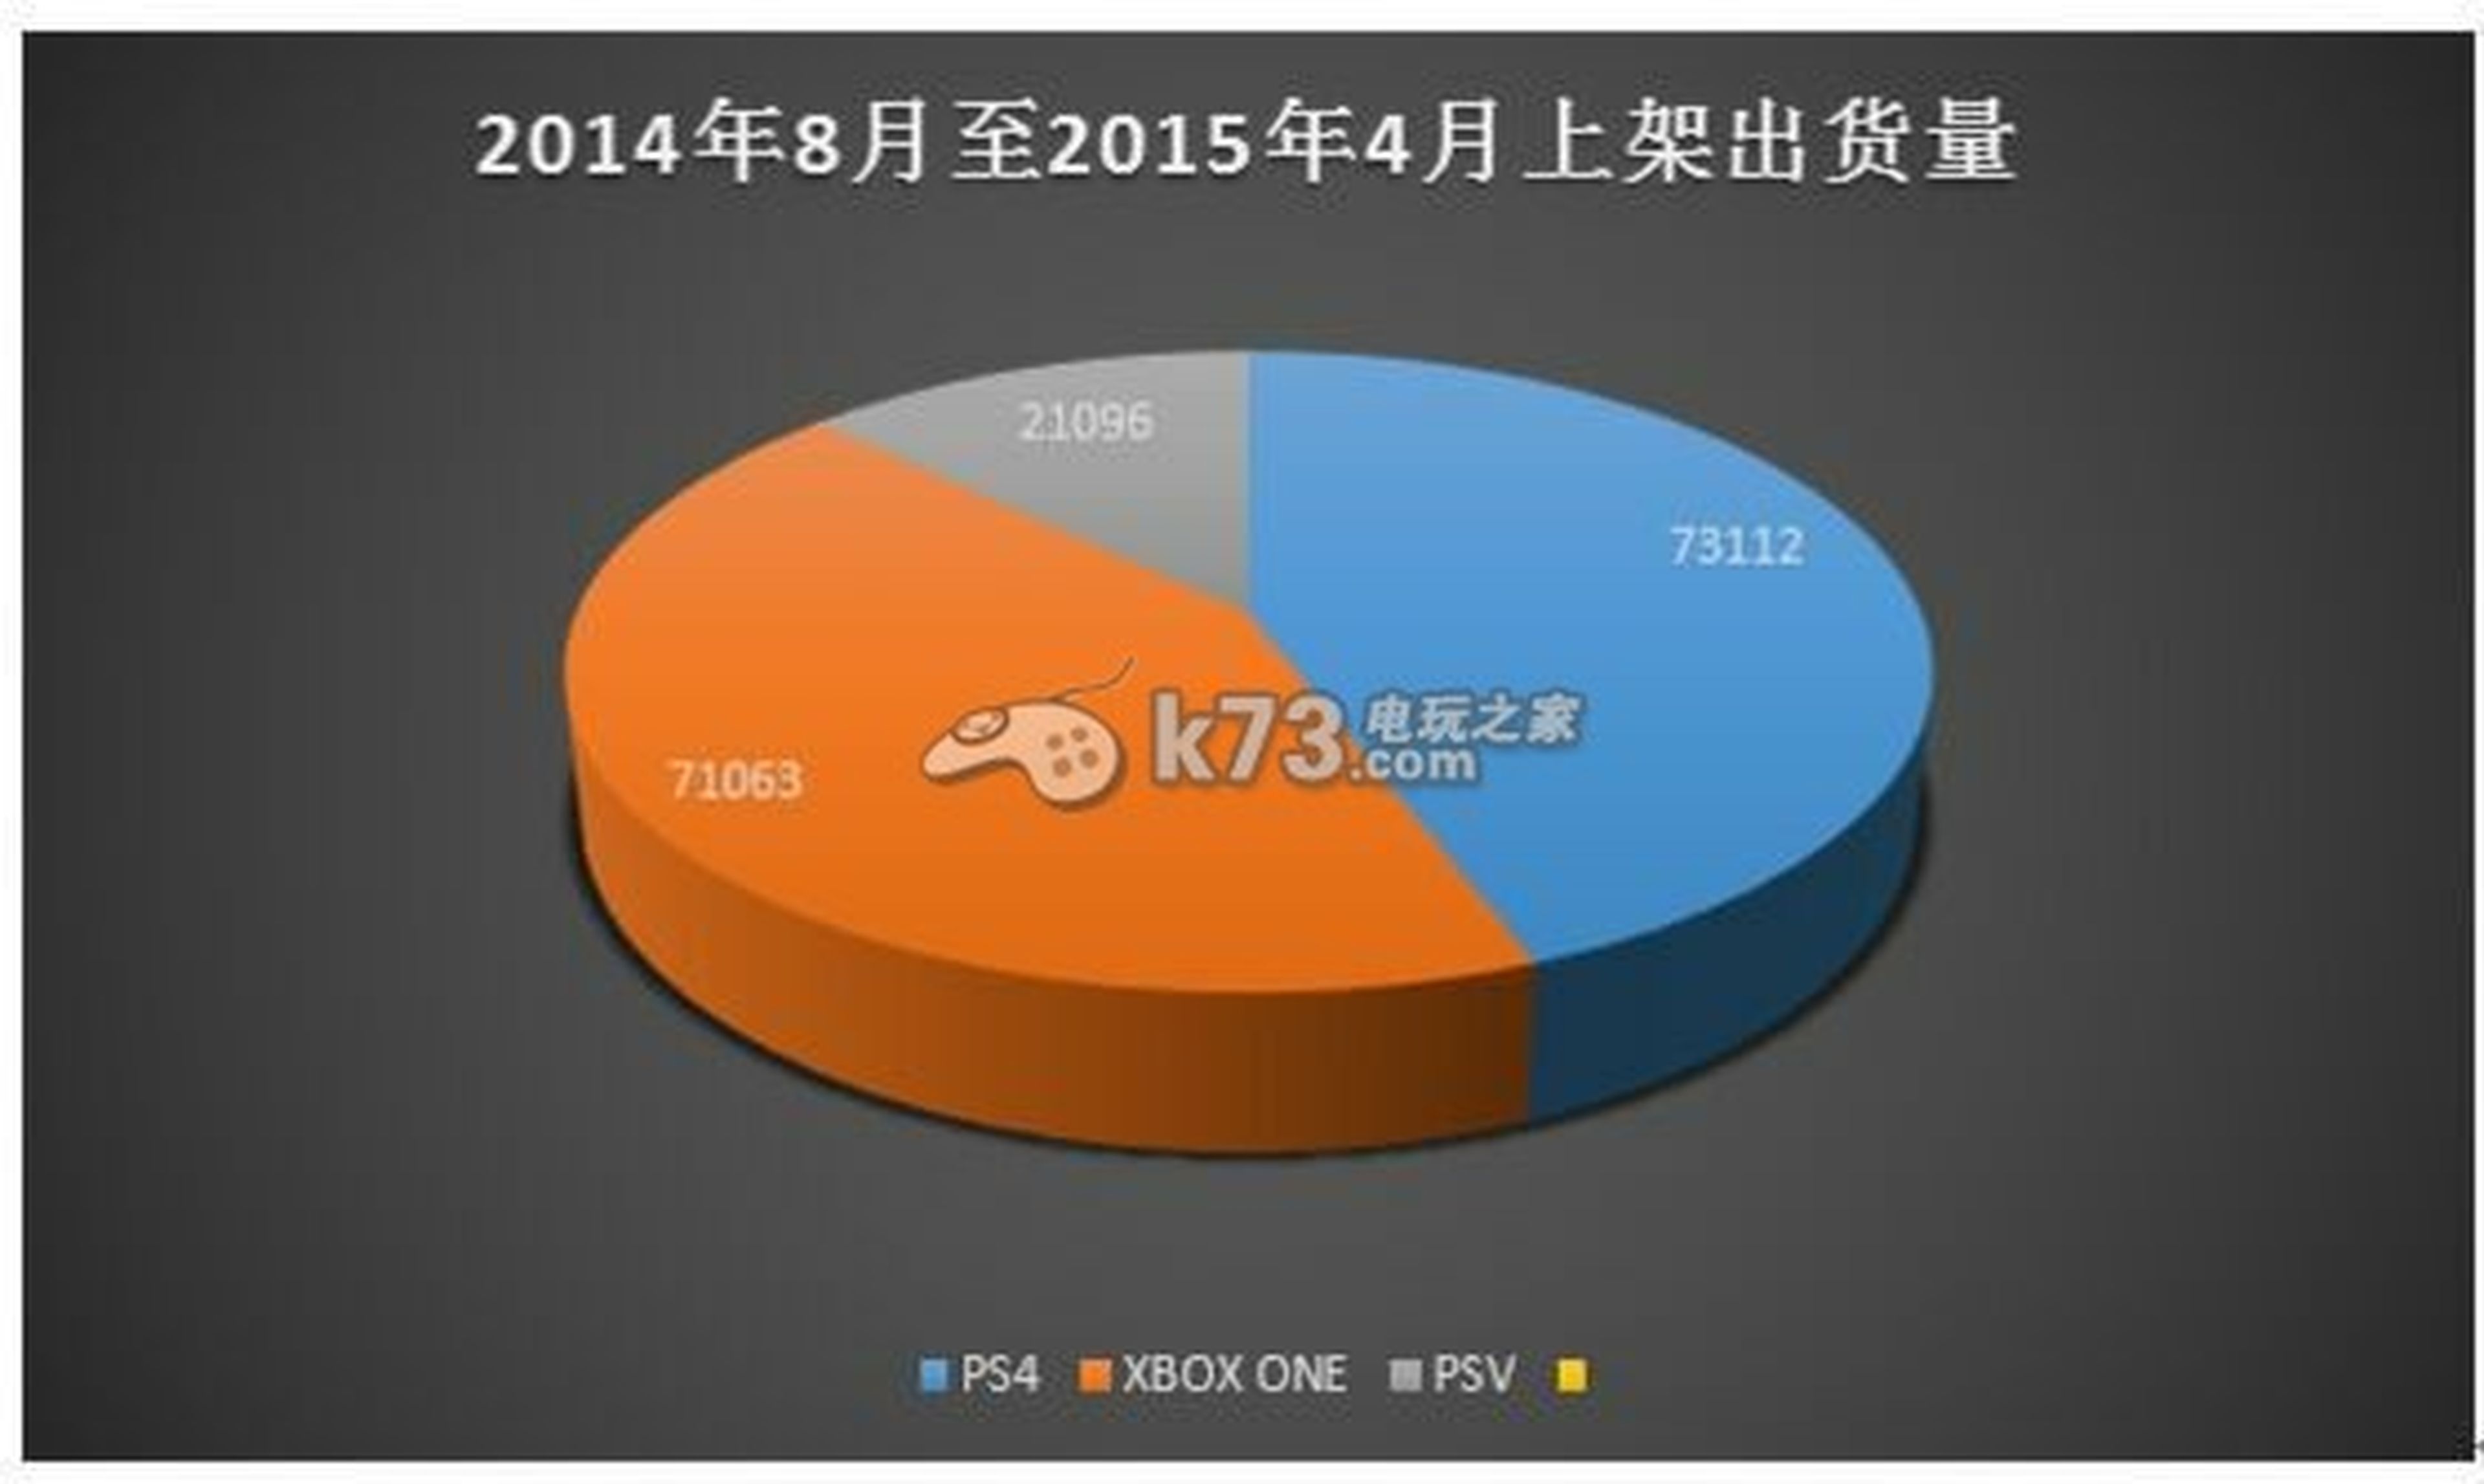 PS4 alcanza a Xbox One en el mercado chino